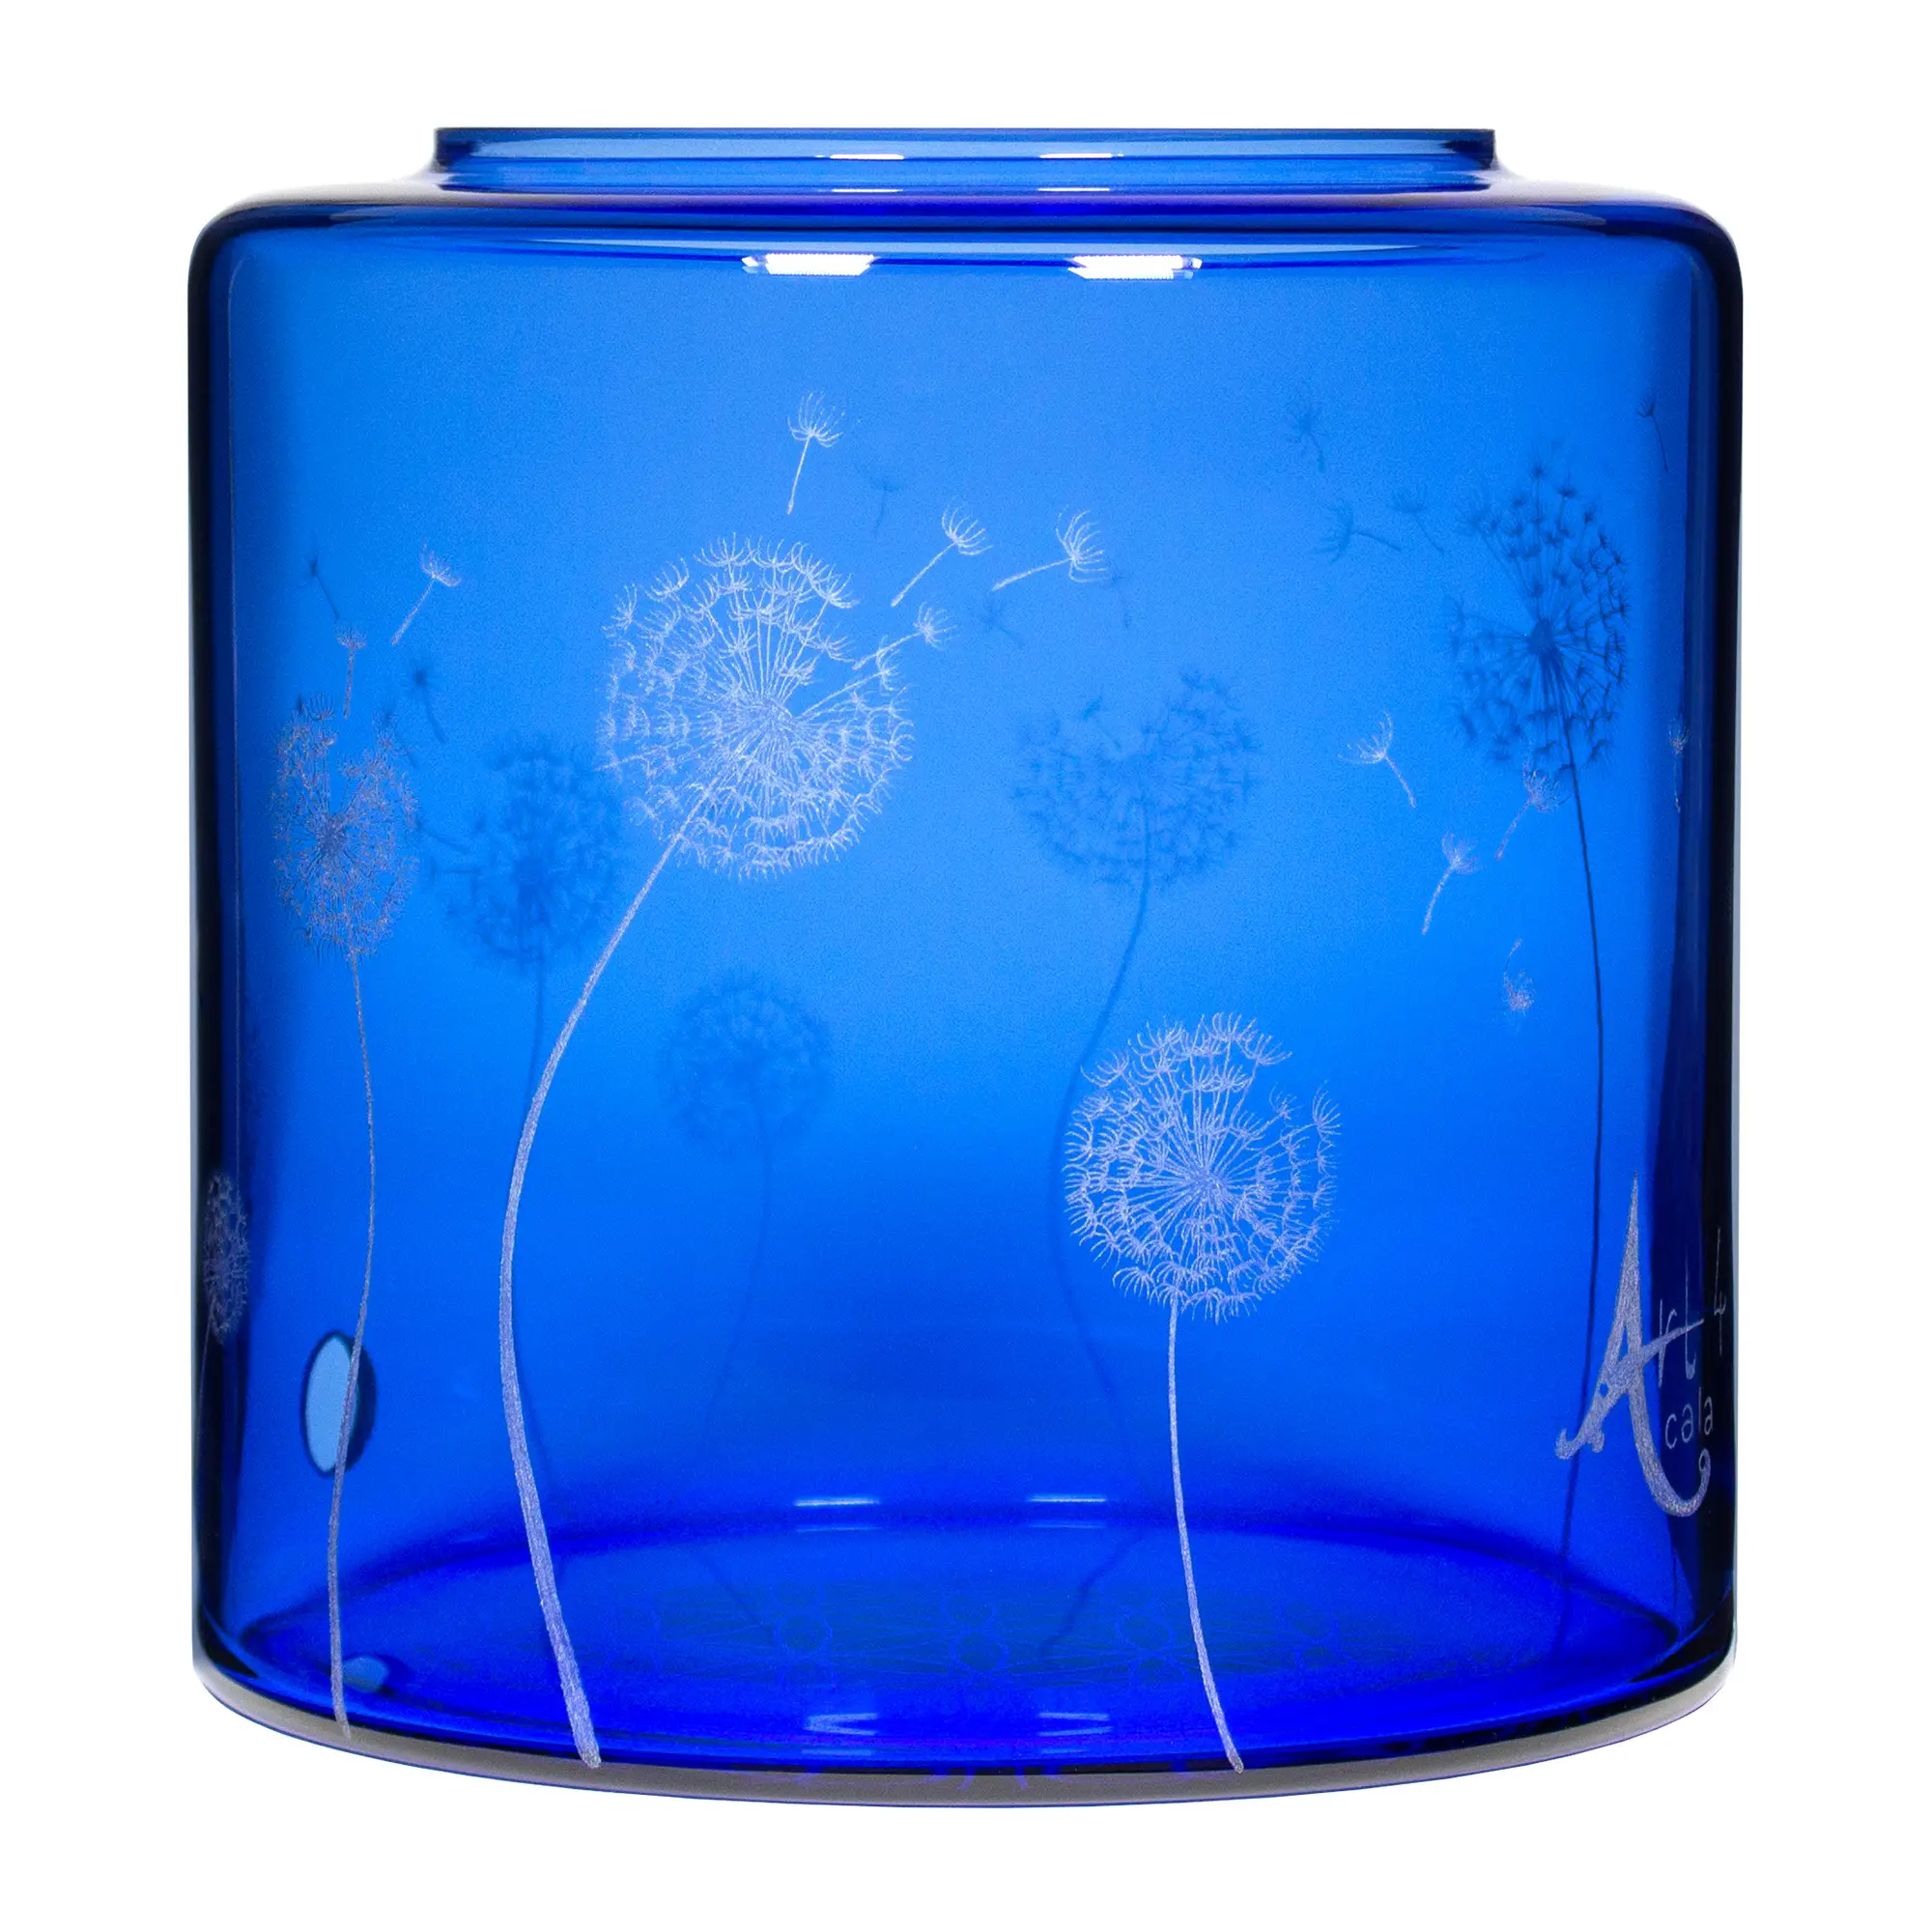 Ein Acala Wasserfilter Mini mit einer Handgravur. Die Gravur zeigt, auf blauem Glas, ganz viele Pusteblumen und einige samen die aus der Pusteblume herausfliegen.Ansicht von vorne rechts..